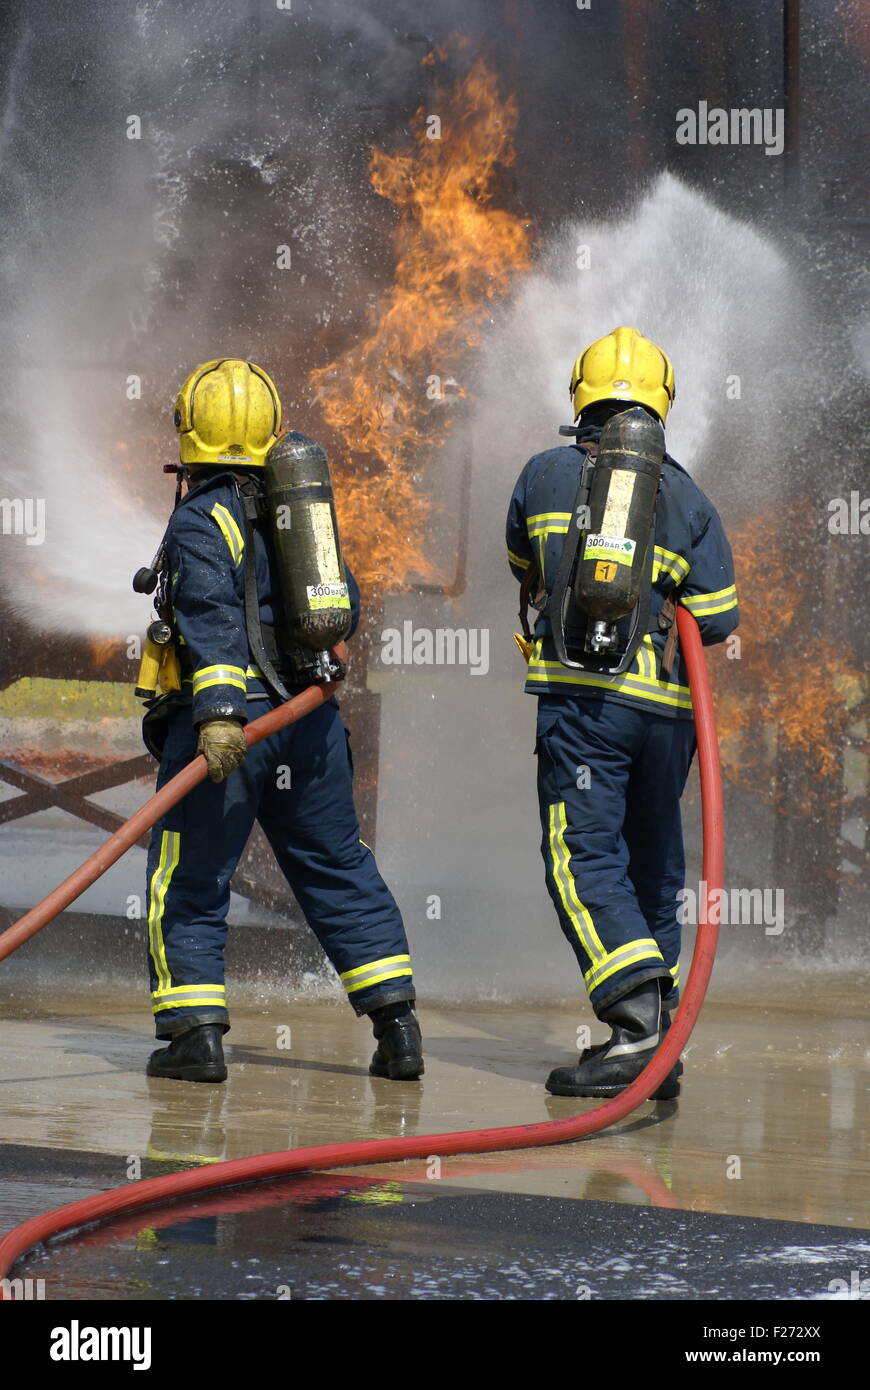 La lutte contre l'incendie des pompiers de carburant Banque D'Images